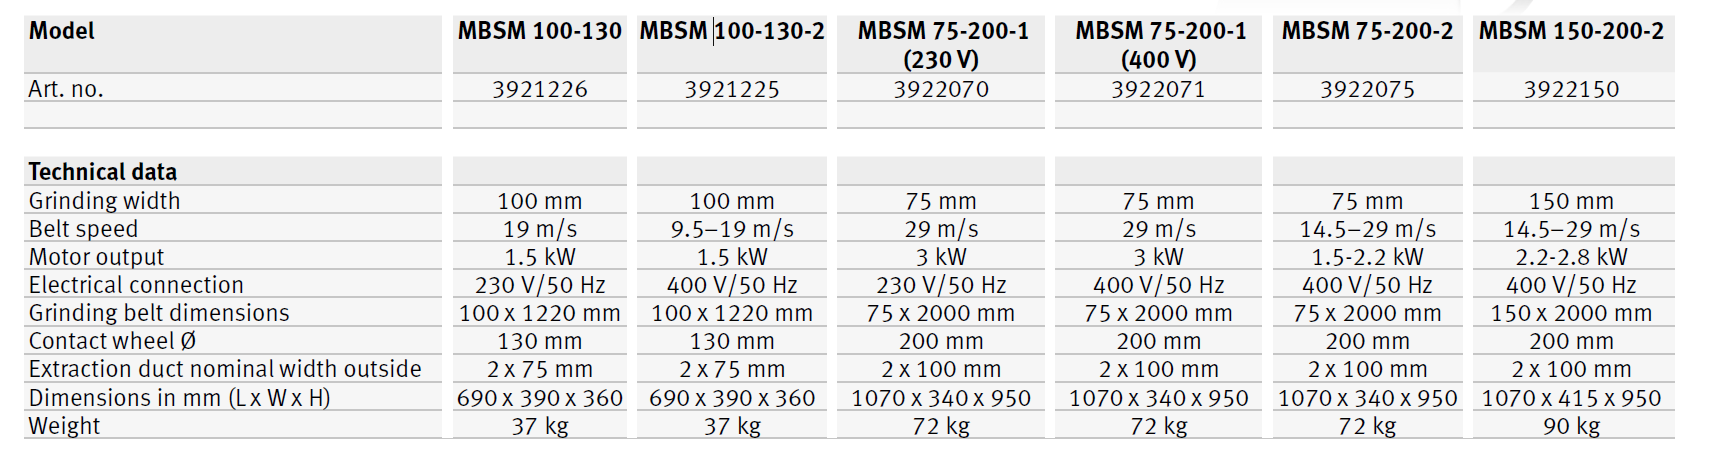 MBSM 100-130 / MBSM 100-130-2 /MBSM 75-200-1 /MBSM 75-200-2 / MBSM 150-200-2